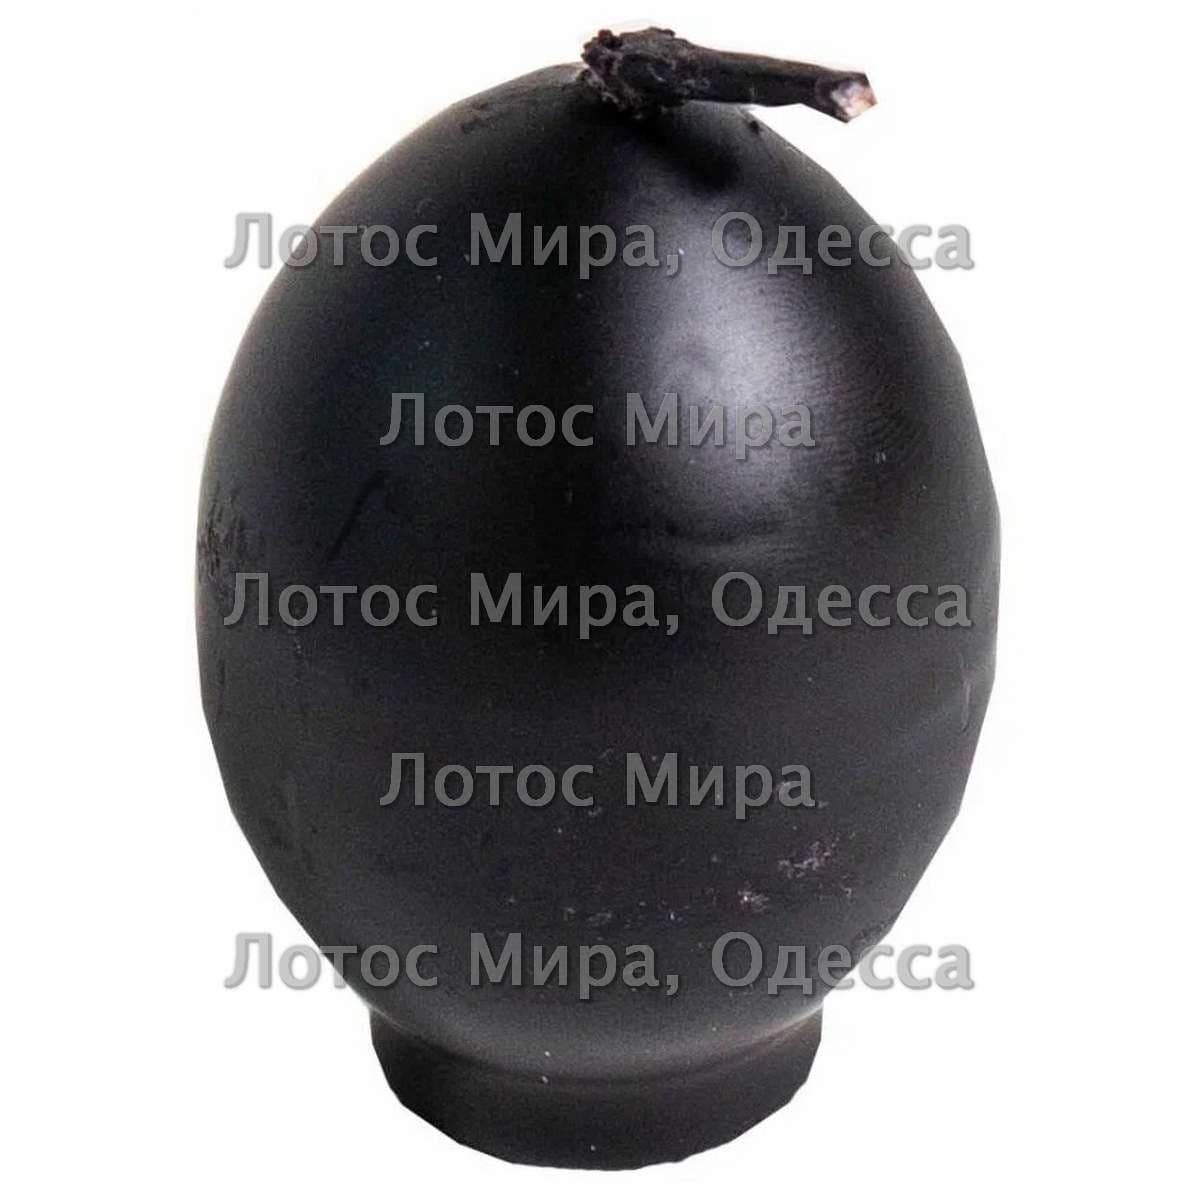 Яйцо черное с травами свеча 5,5см.0220